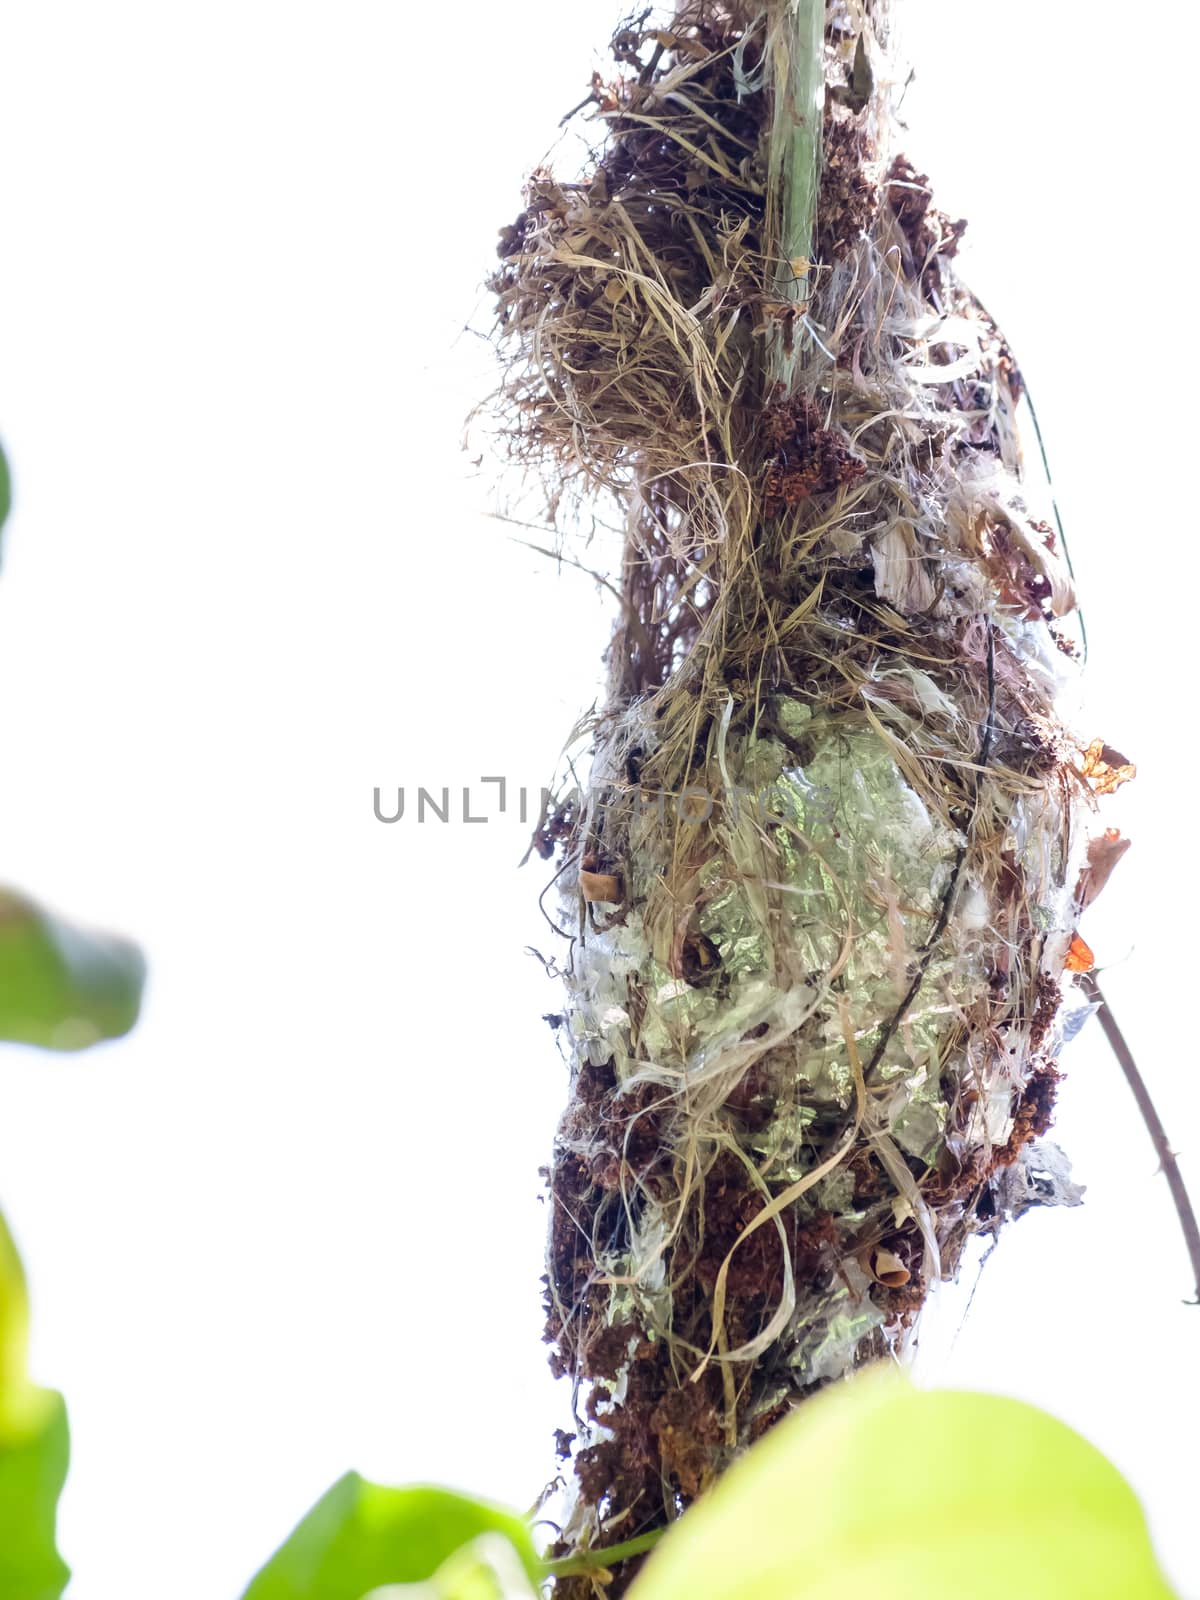 Olive-backed sunbird nest by Exsodus